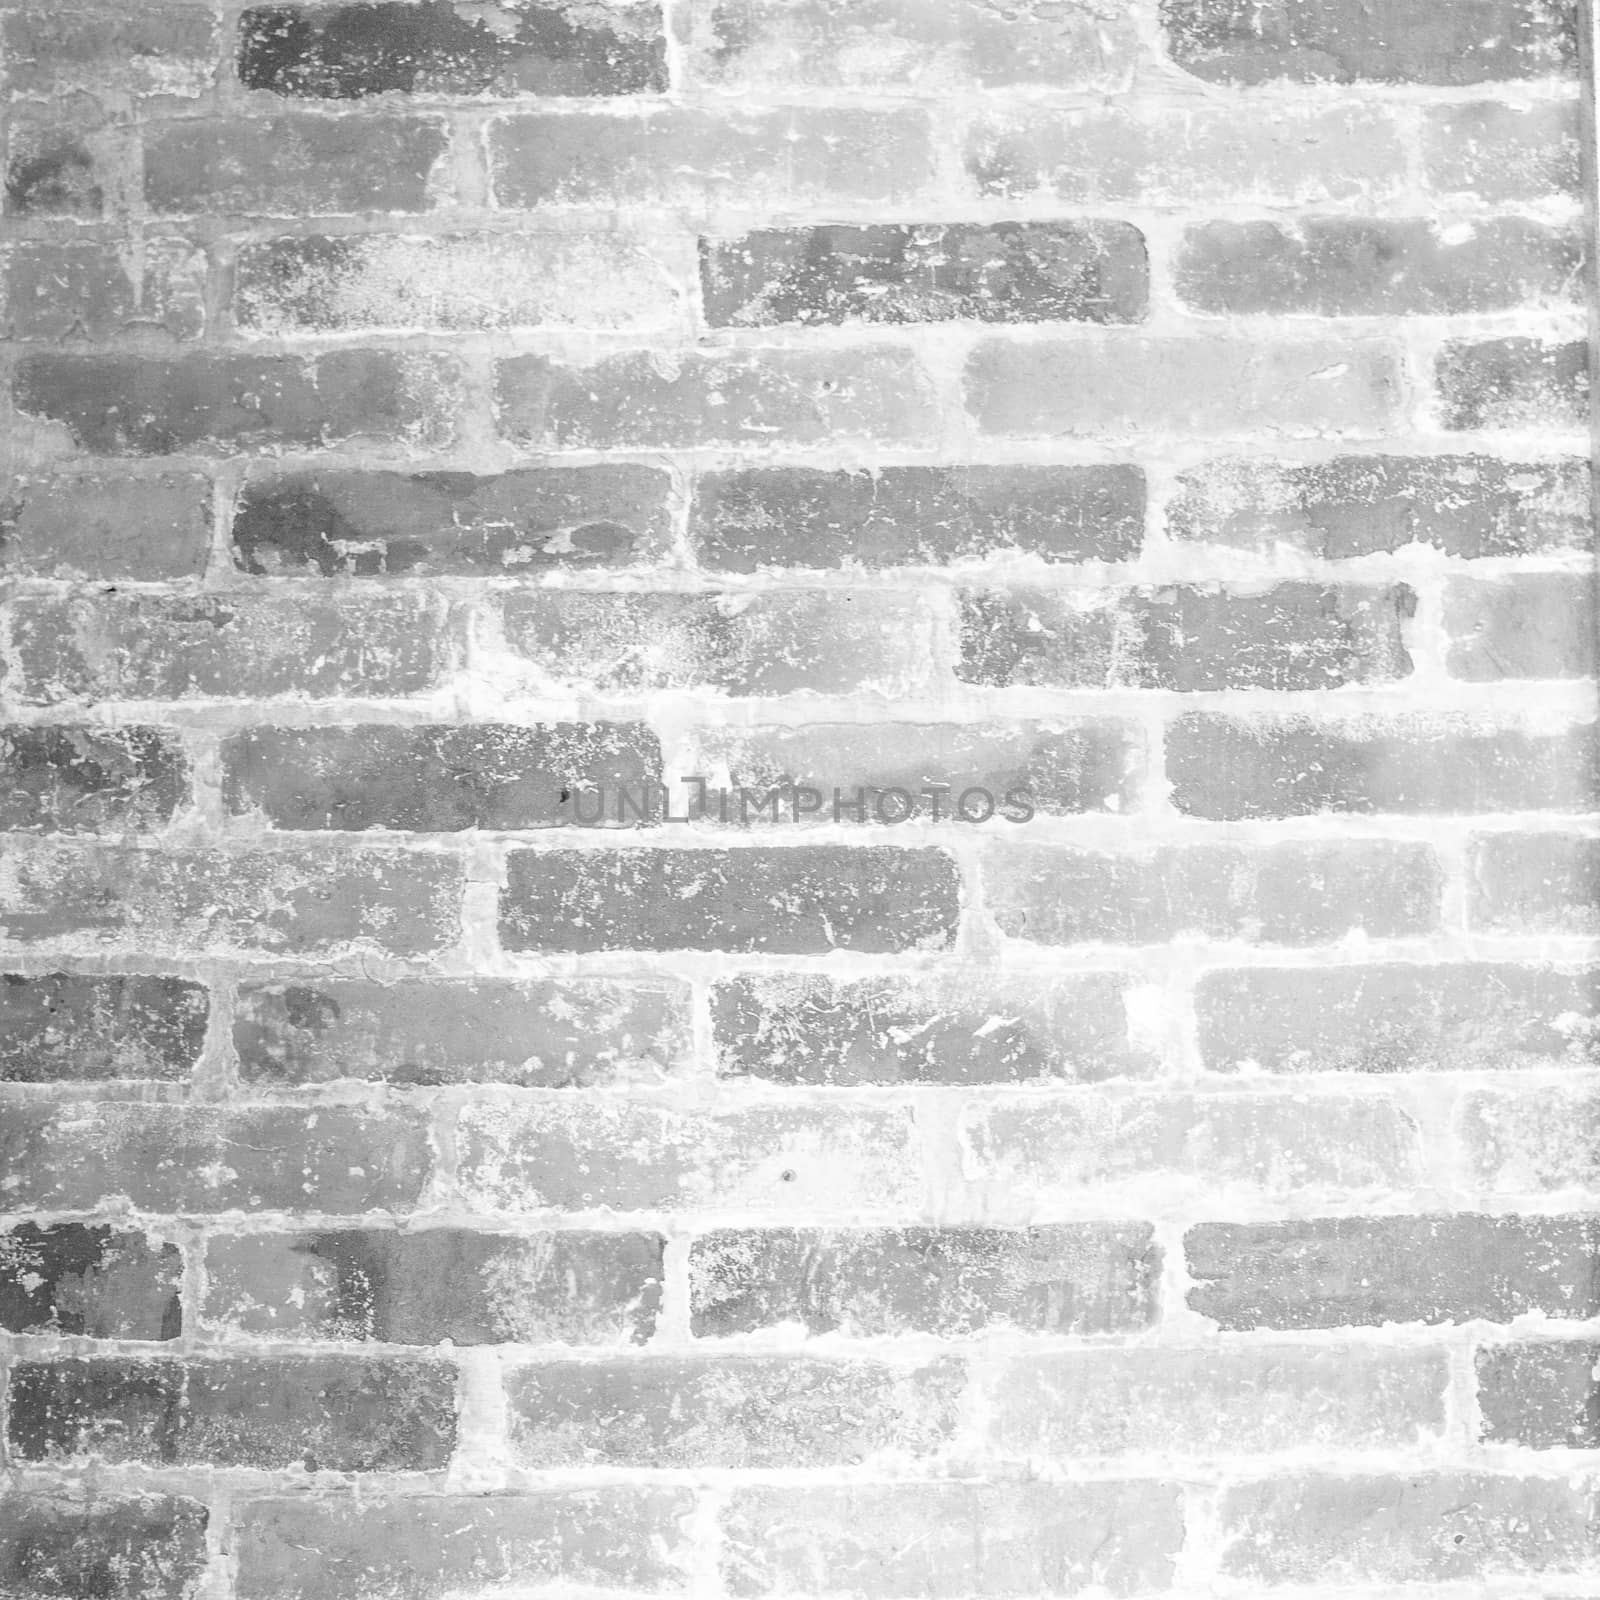 Grunge Black and white  brick wall by Suriyaphoto